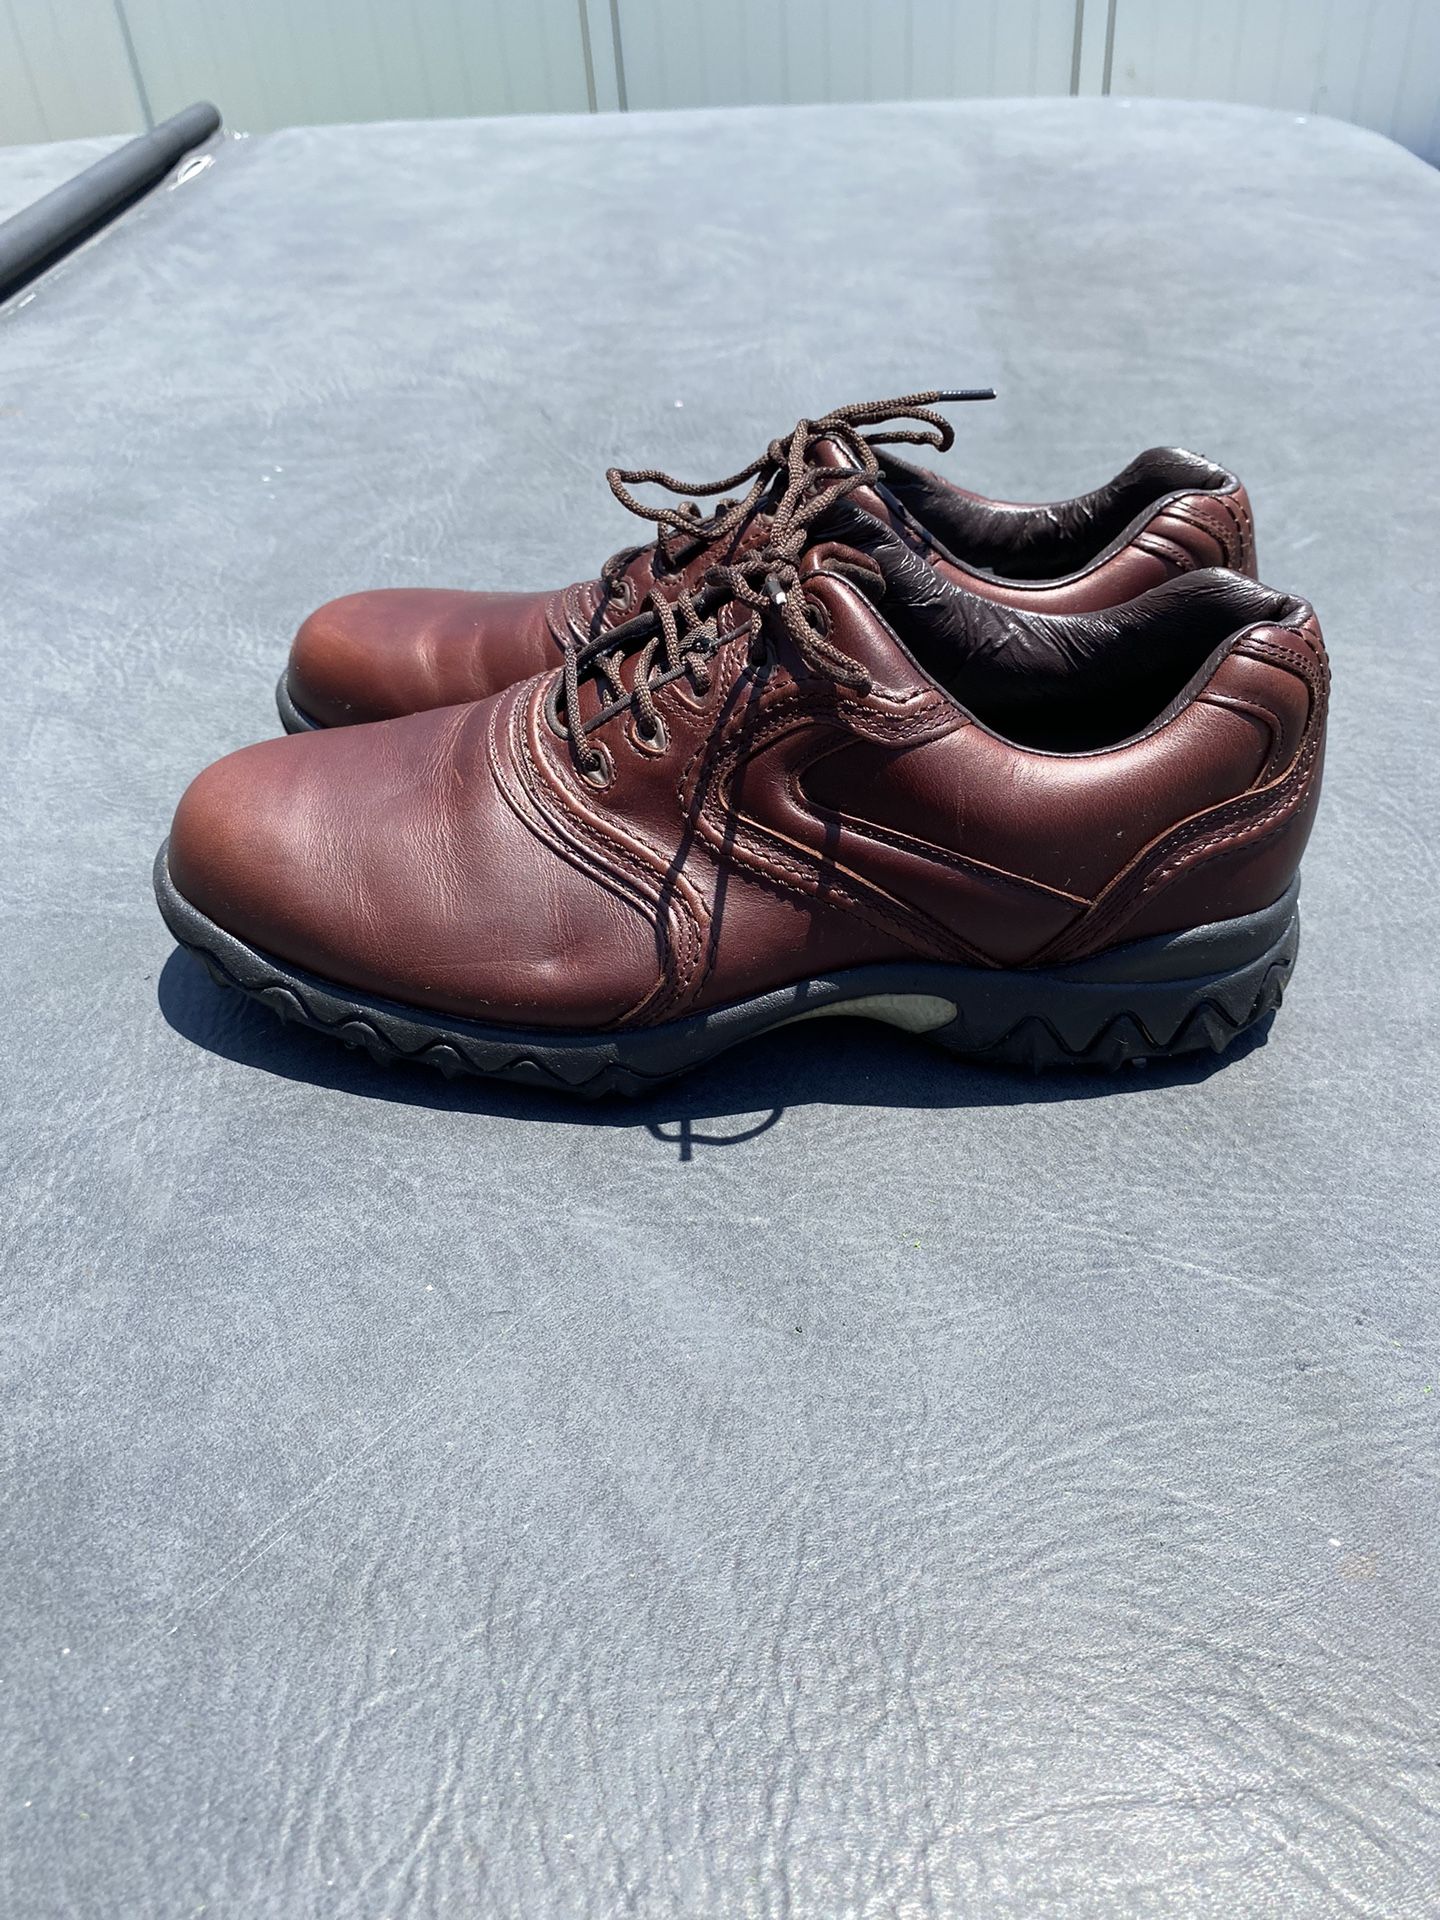 Mens Golf Shoes Sz 9.5 M -Footjoy Comtour Series waterproof